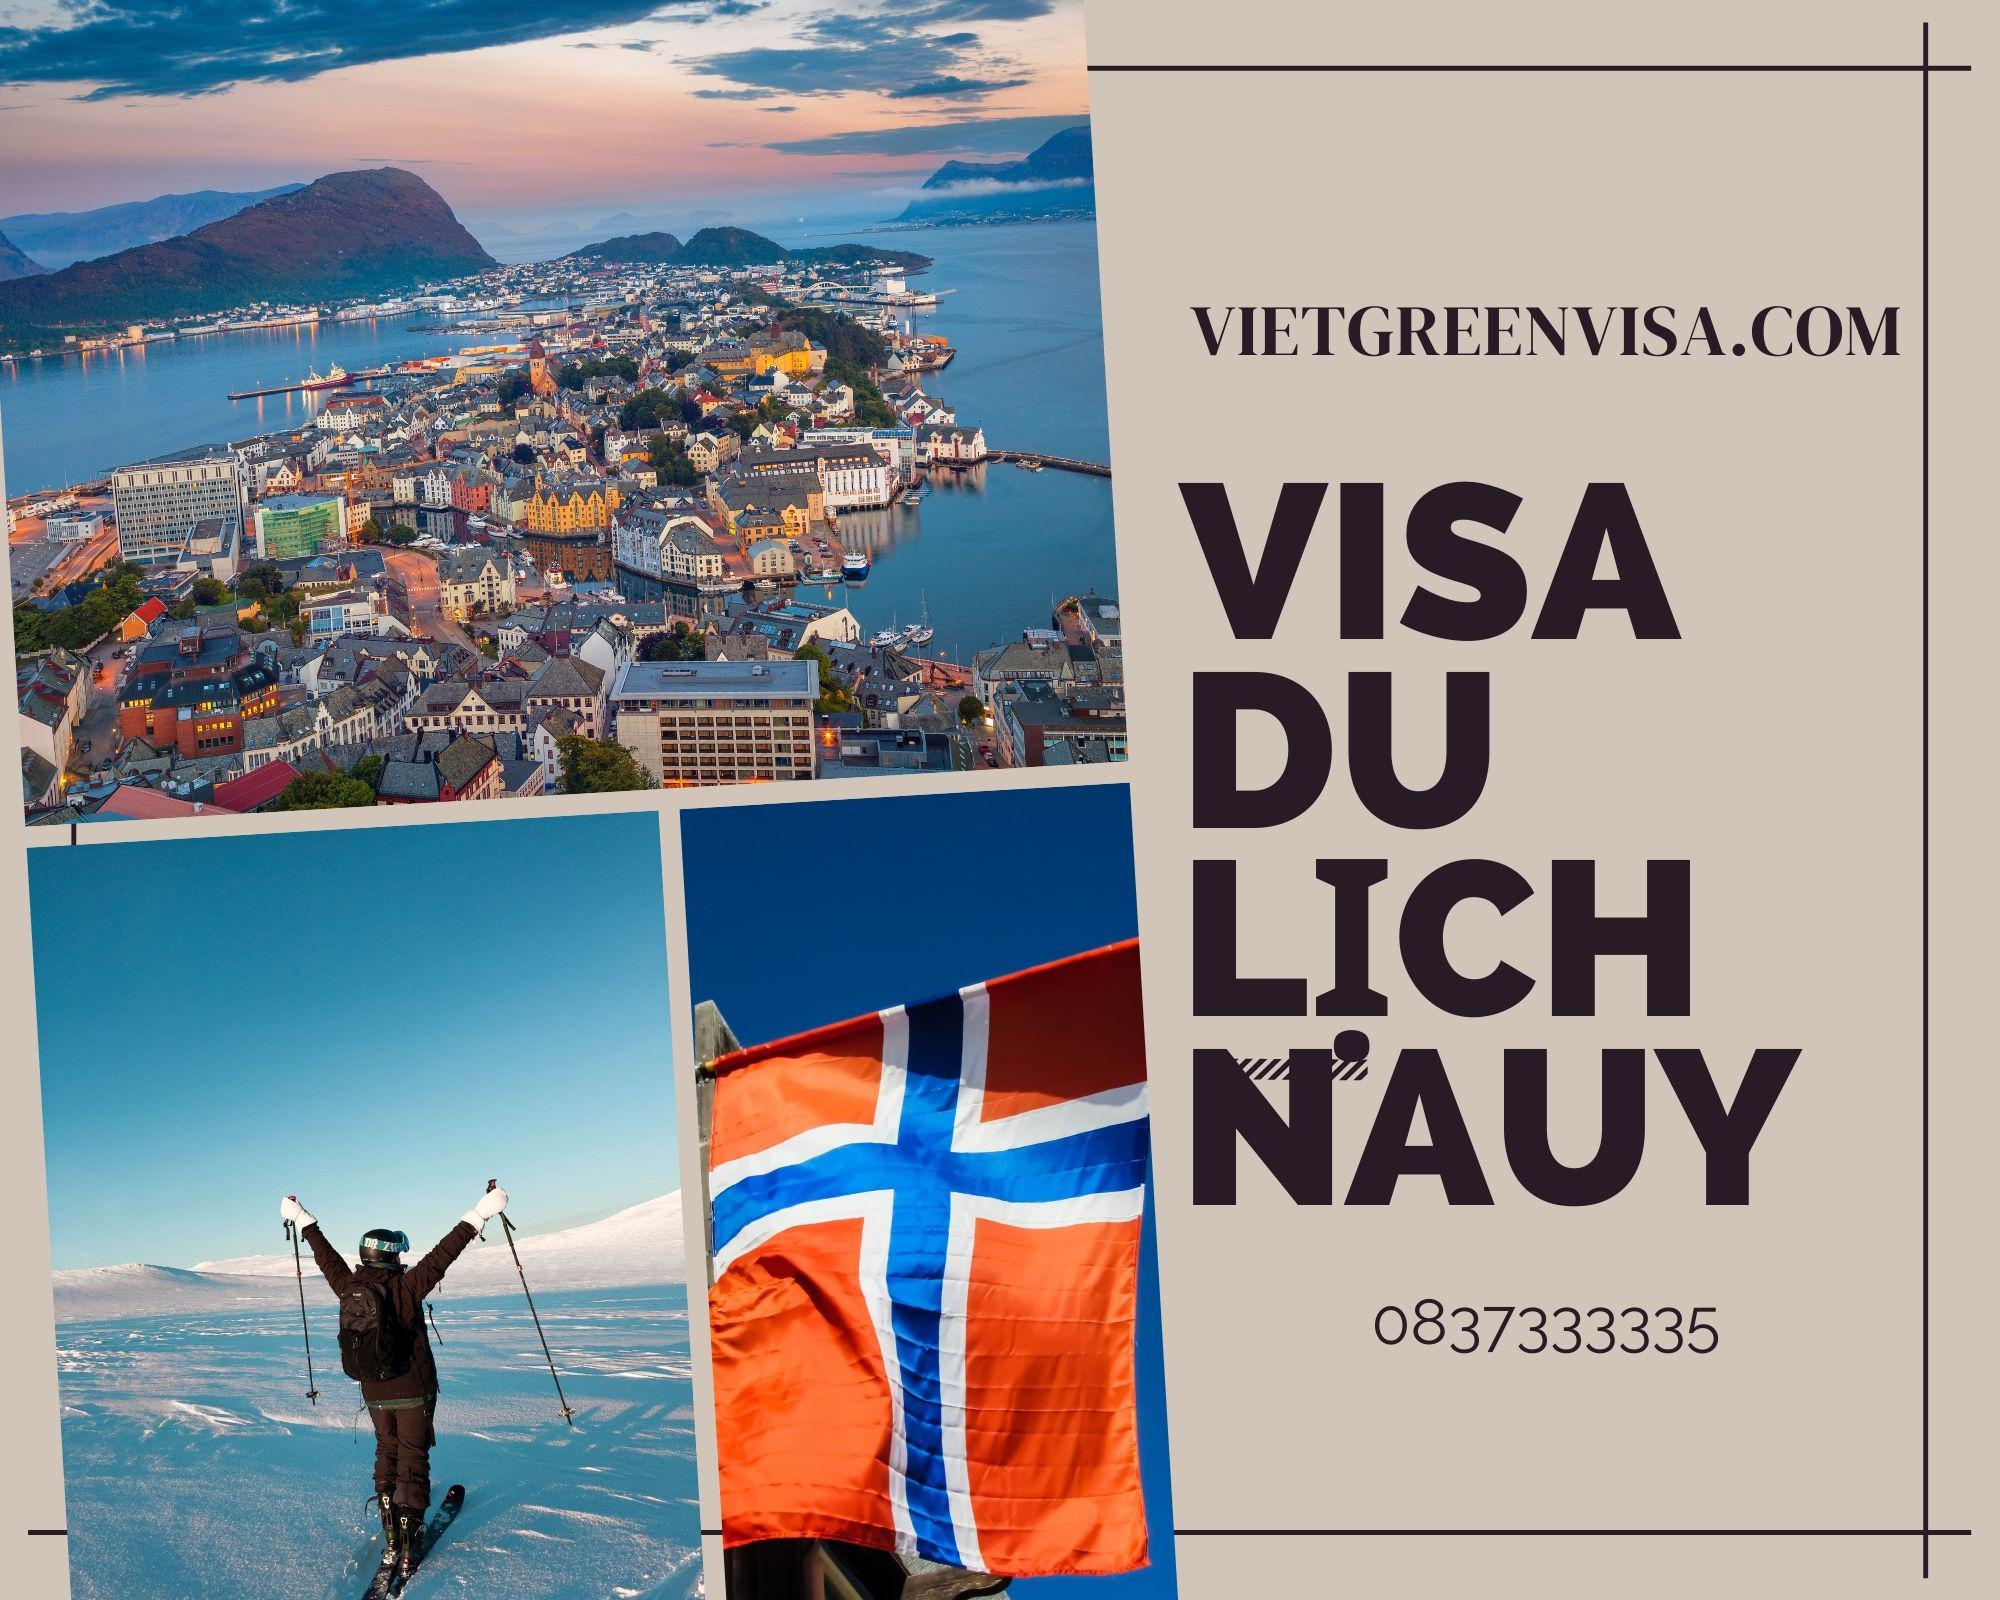 Dịch vụ xin visa du lịch Nauy nhanh chóng